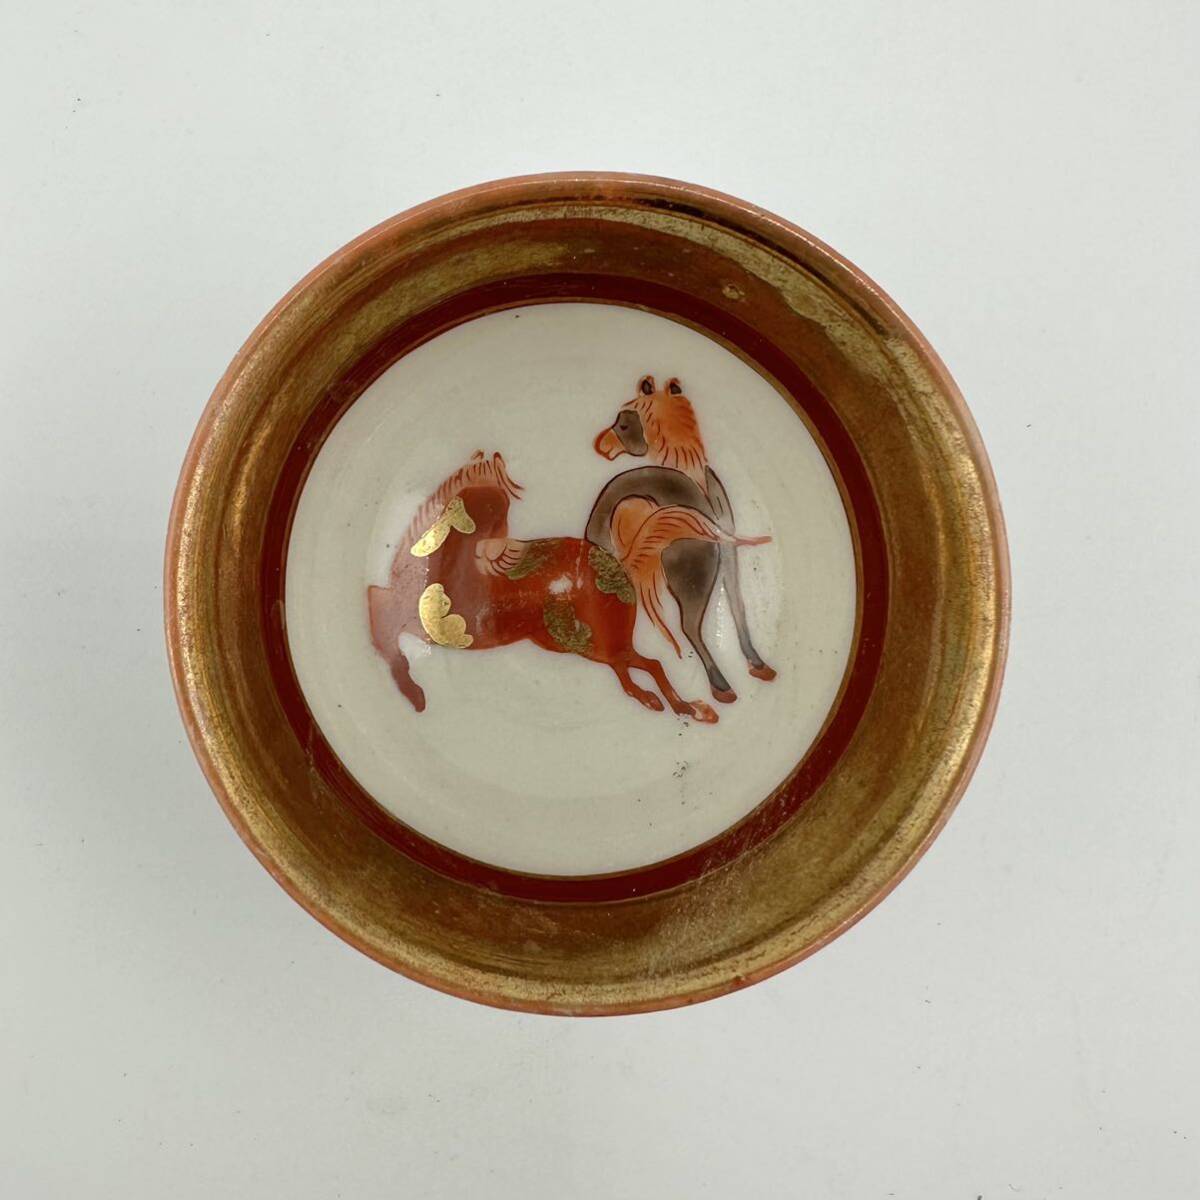  Kutani чашка саке посуда для сакэ 2 покупатель KUTANI феникс лошадь золотая краска антиквариат цветная роспись рюмка для сакэ Kutani .... керамика мир производства античный 